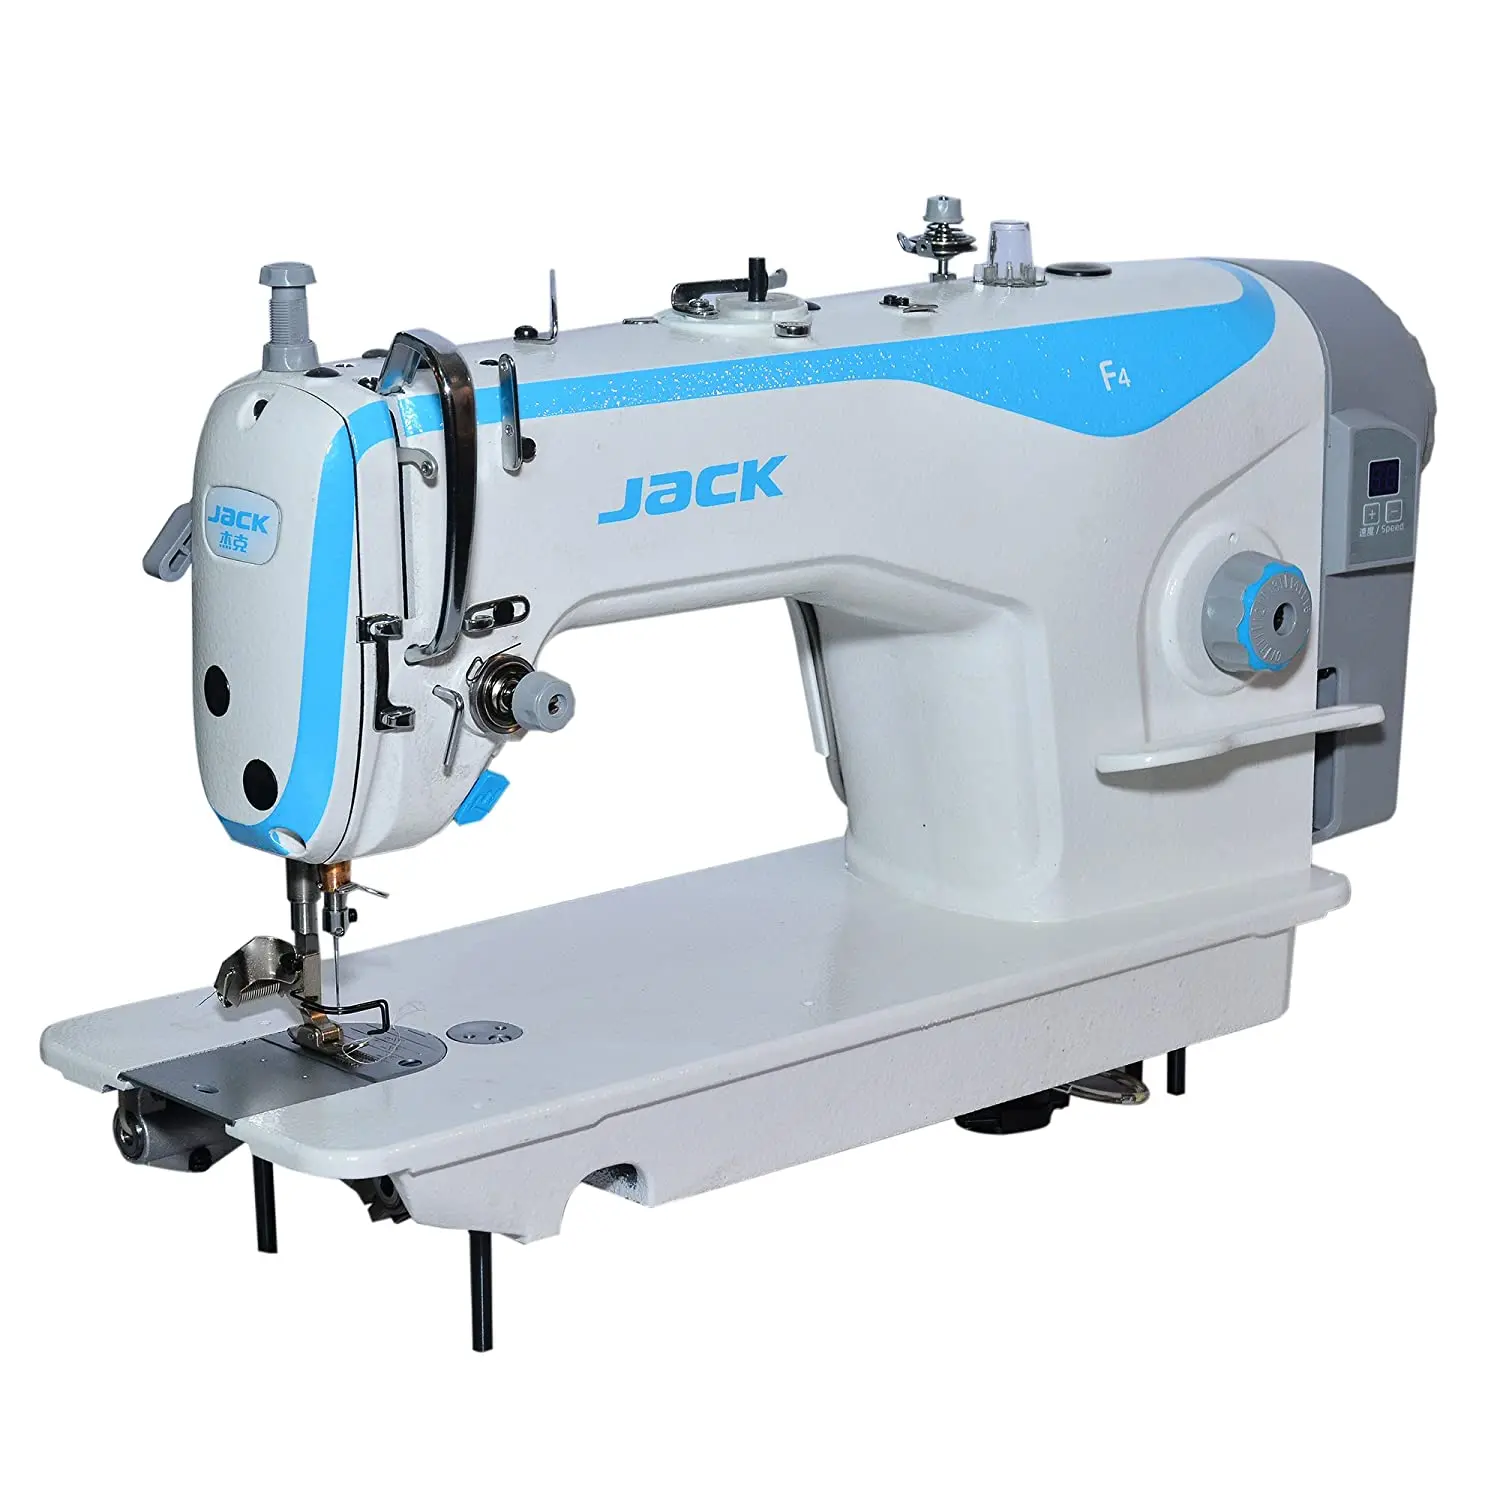 Джек f4 швейная машина